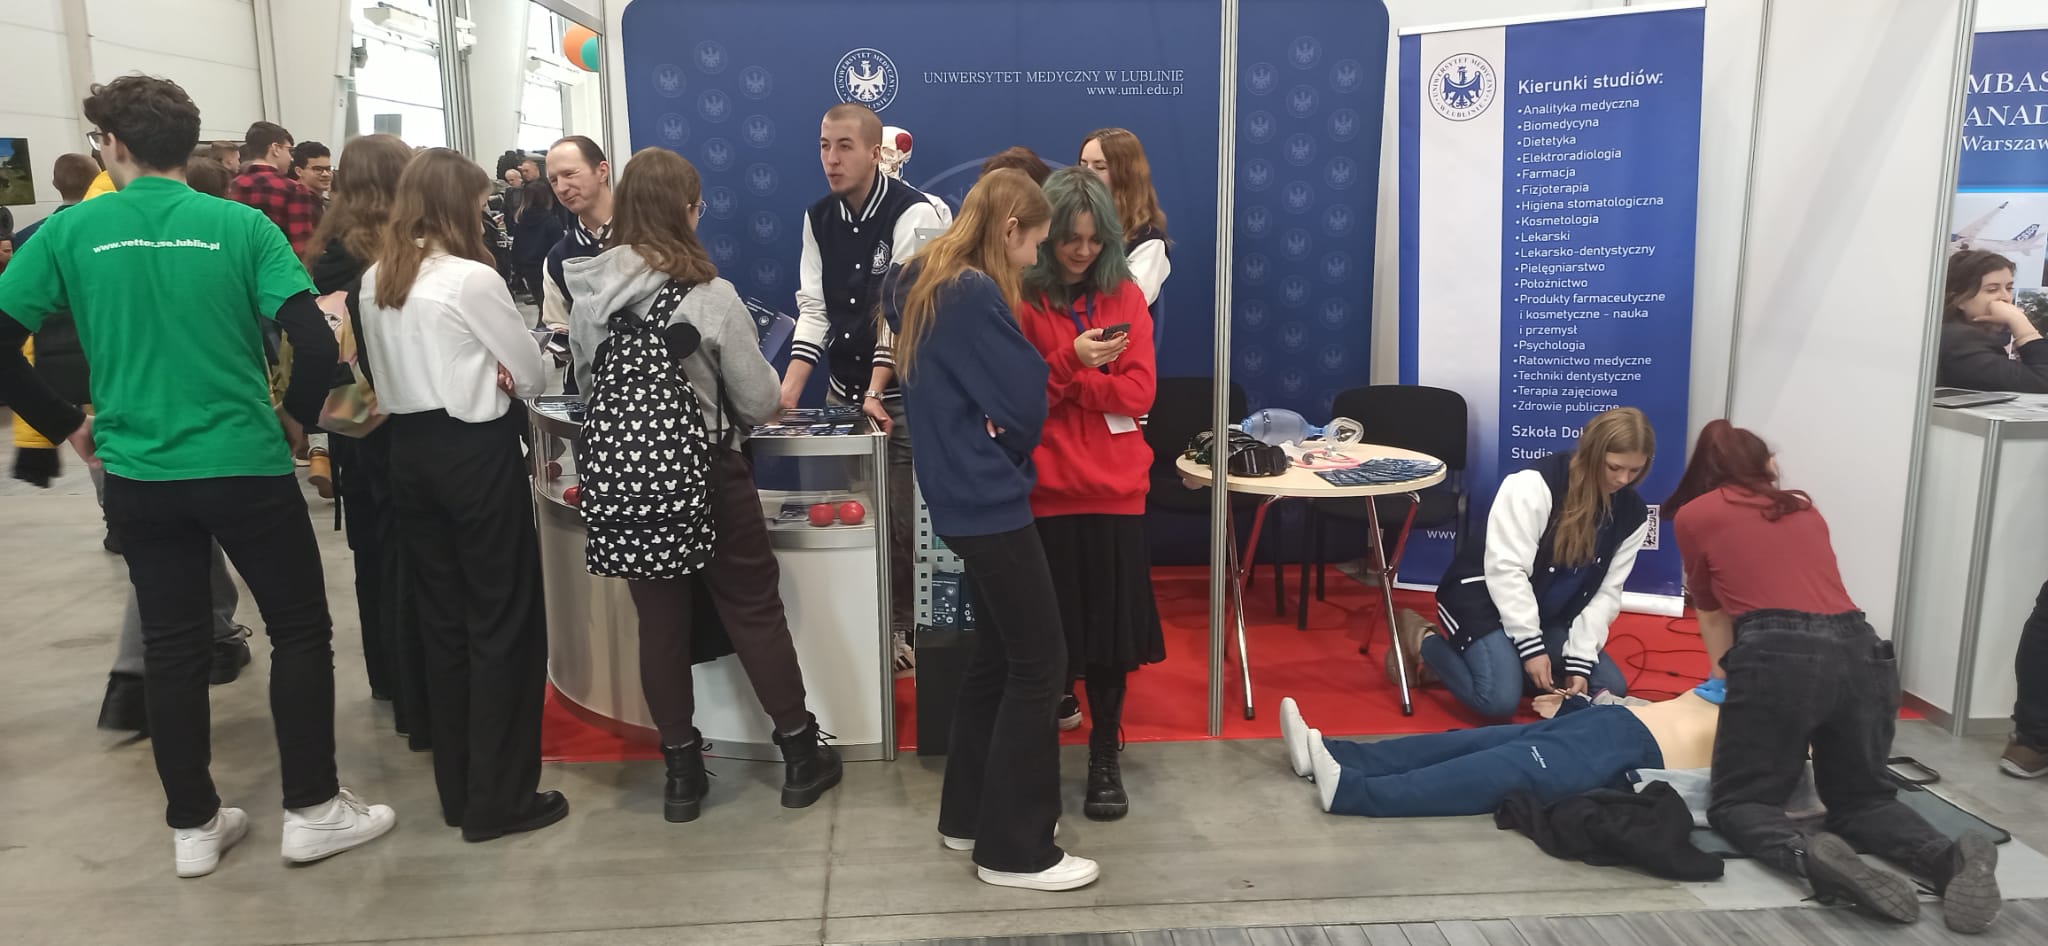 Stoisko na targach edukacyjnych, przedstawiciele uniwersytetu medycznego w Lublinie rozmawiają z zainteresowanymi licealistami